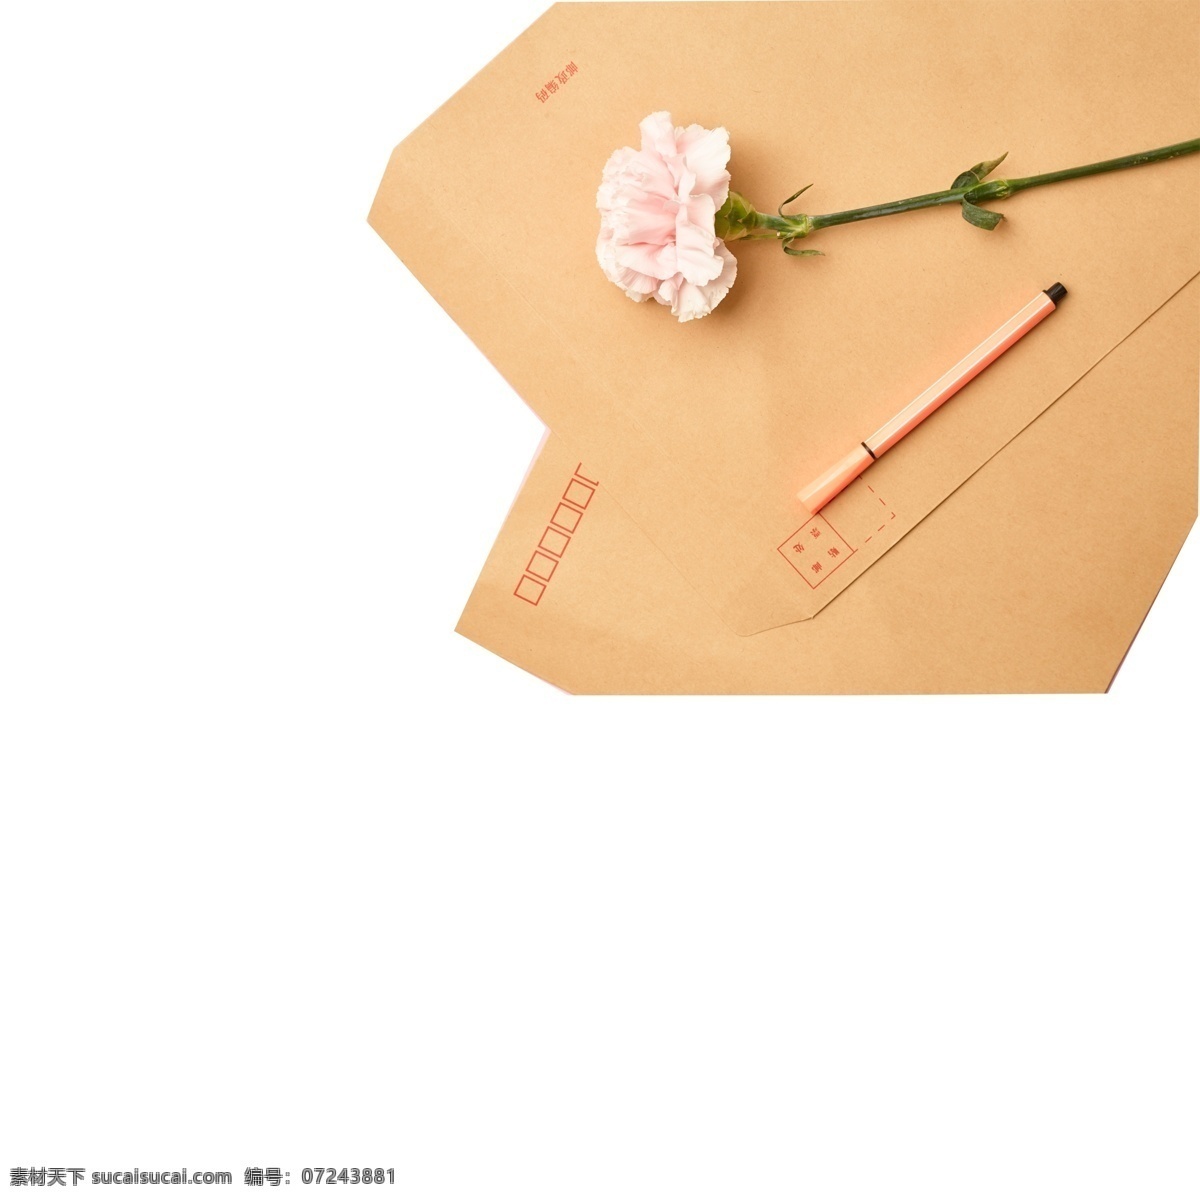 写给 情人 信封 免 扣 图 写封信送情人 牛皮纸信封 写给情人的 免扣图 橙色 条纹 中性笔 粉色的花朵